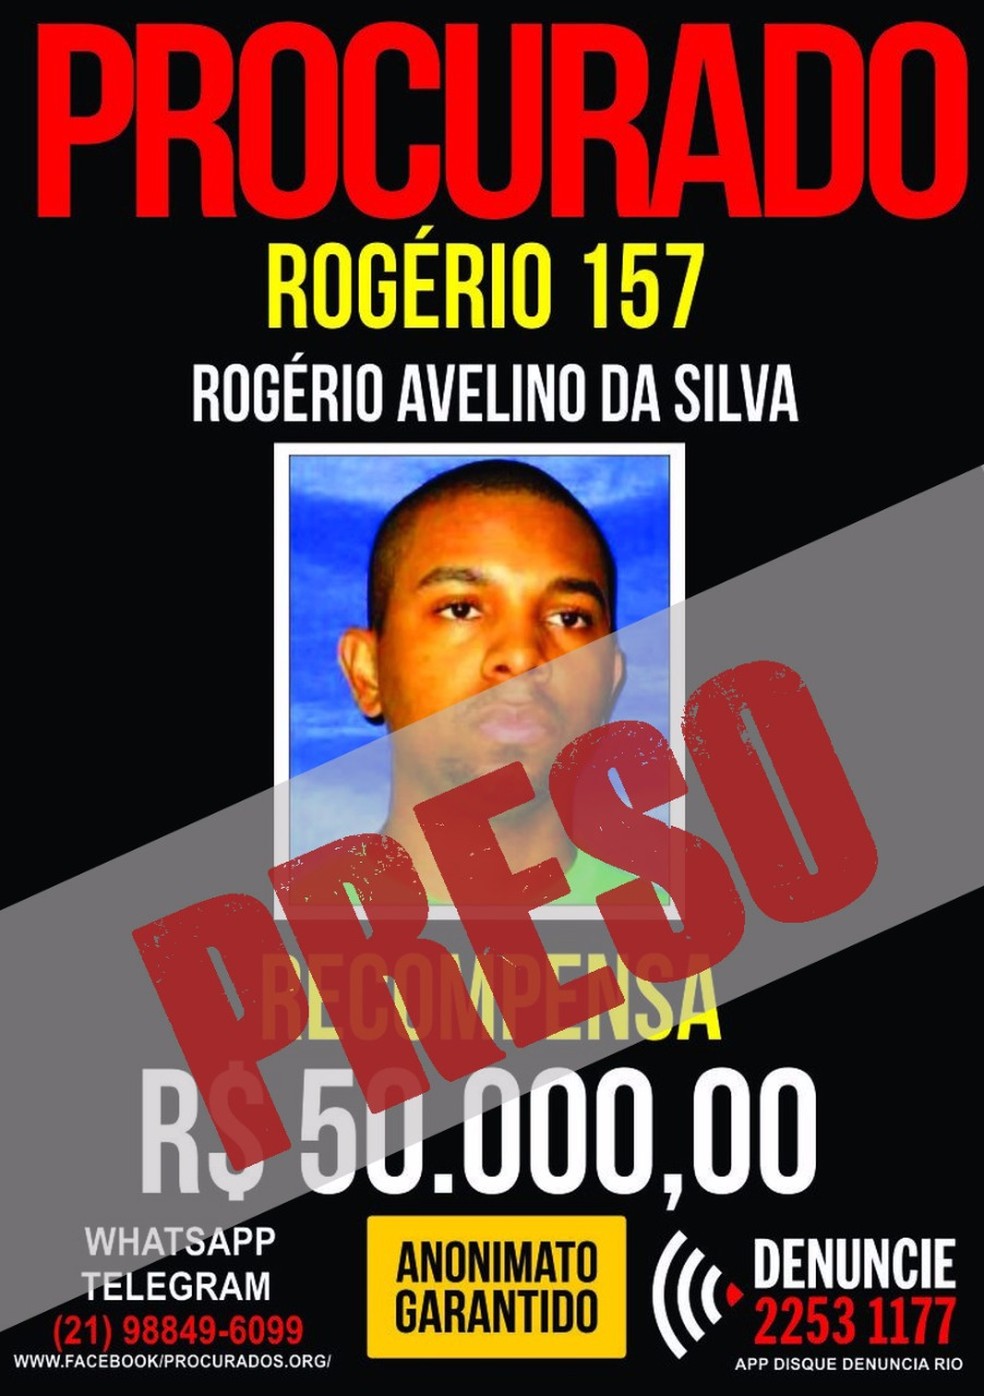 Disque Denúncia oferecia R$ 50 mil por informações que levassem à prisão de Rogério 157: era o traficante mais procurado do Rio (Foto: Divulgação/Disque Denúncia)